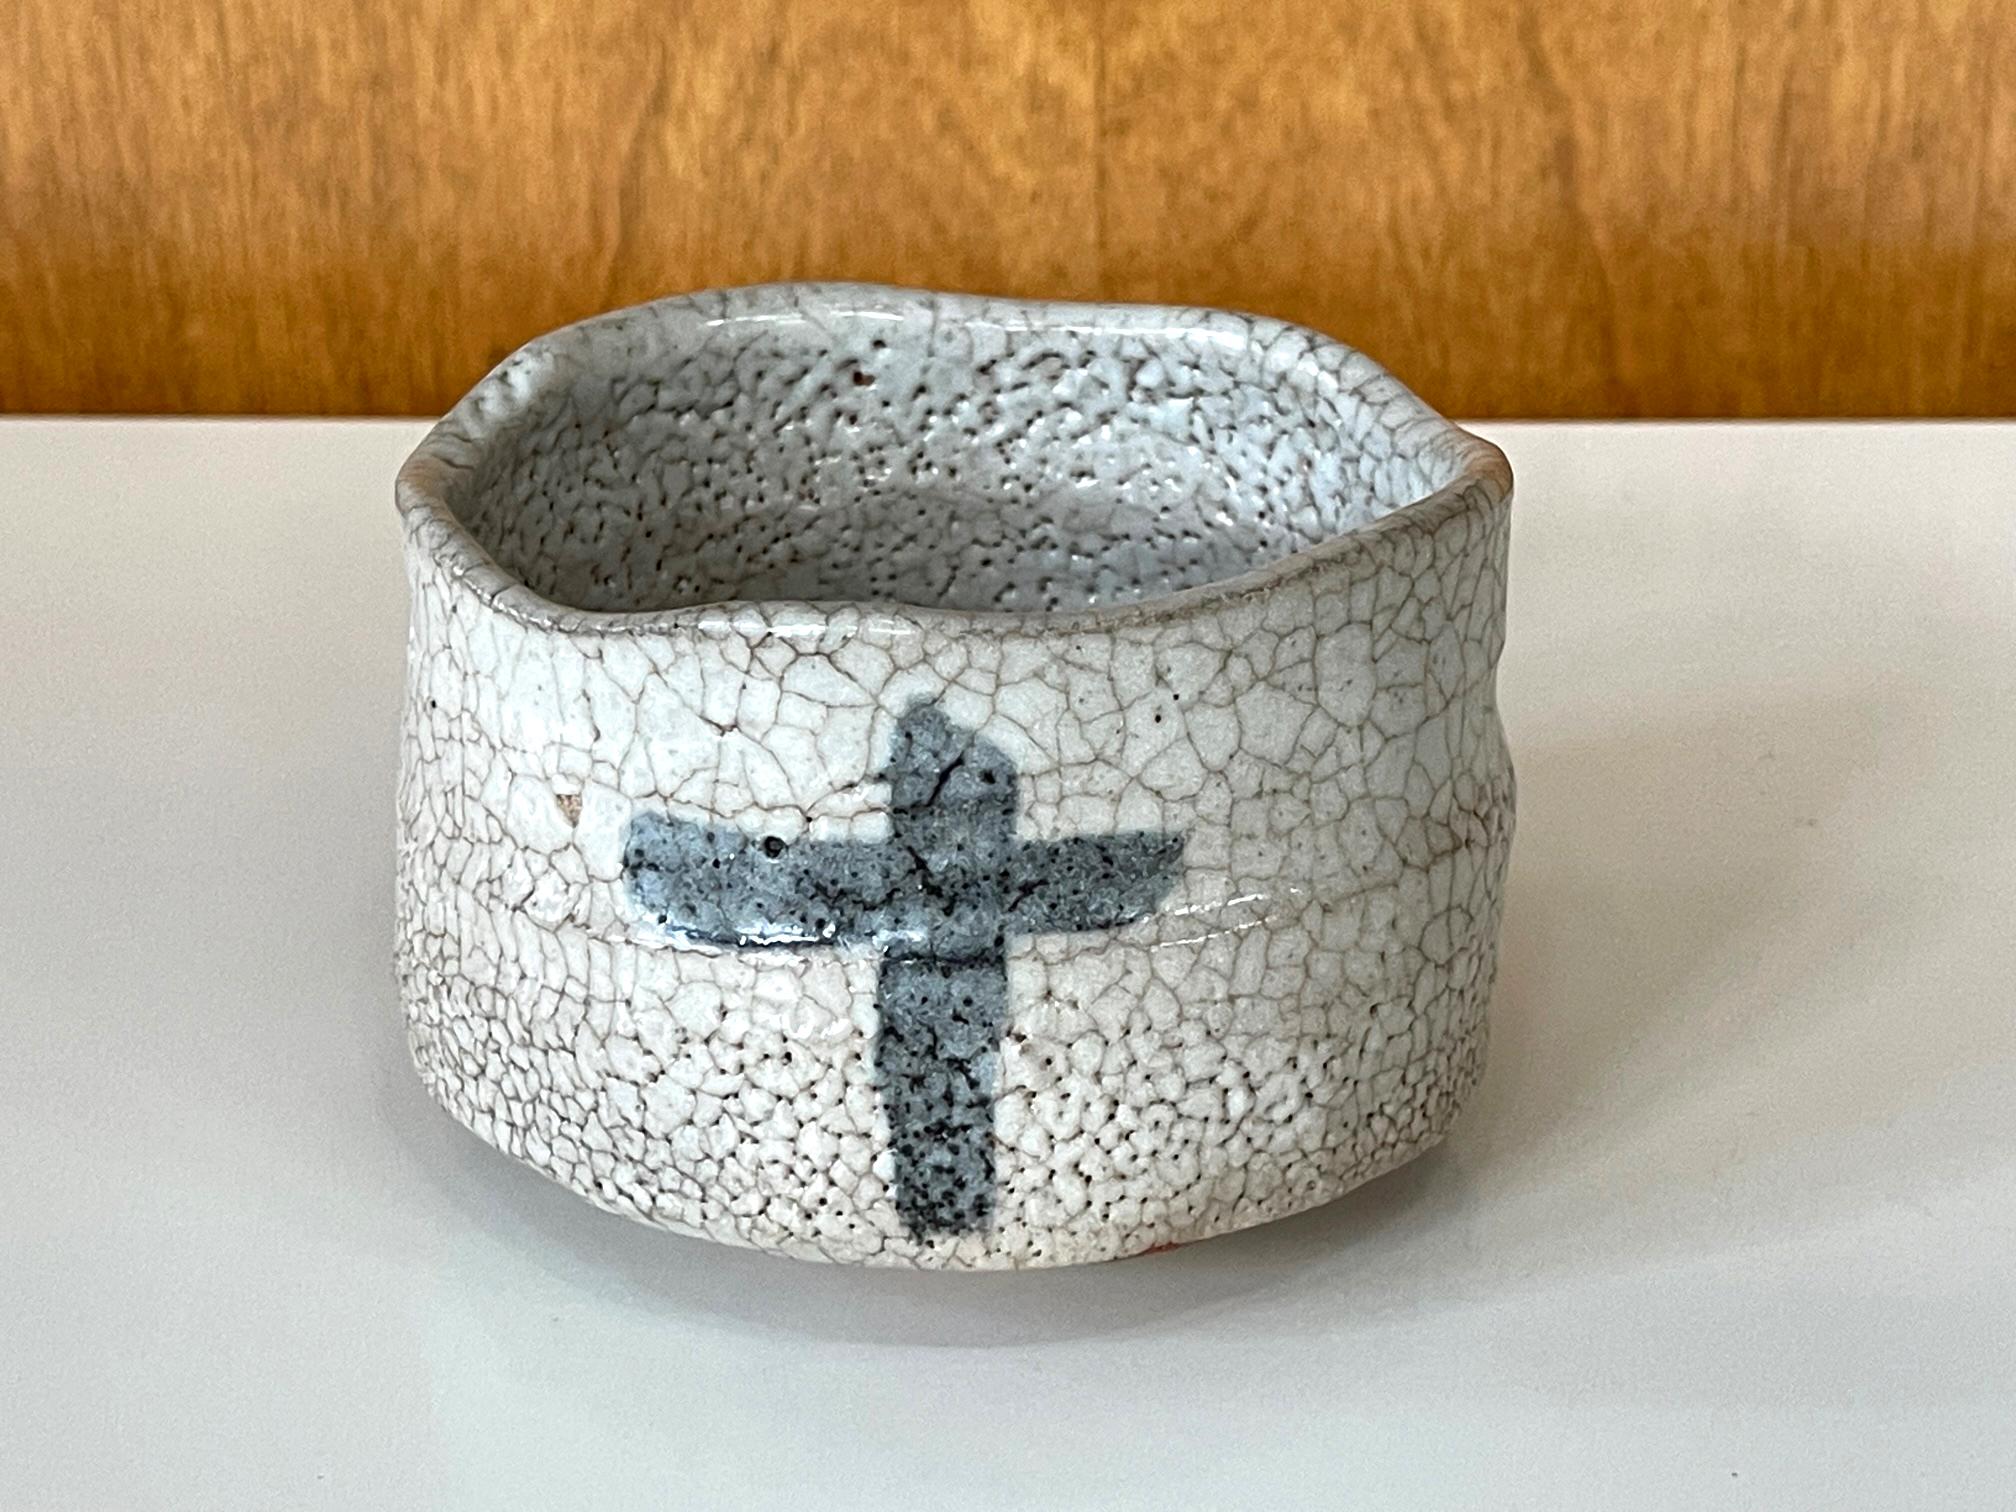 Bol à thé moderne en céramique japonaise (chawan) réalisé par le potier Toyoda Katsuhiko (1945-). Le bol a été empoté en forme de sabot avec un pied annulaire court, dans la tradition de la céramique Shino. Sa taille et ses proportions harmonieuses